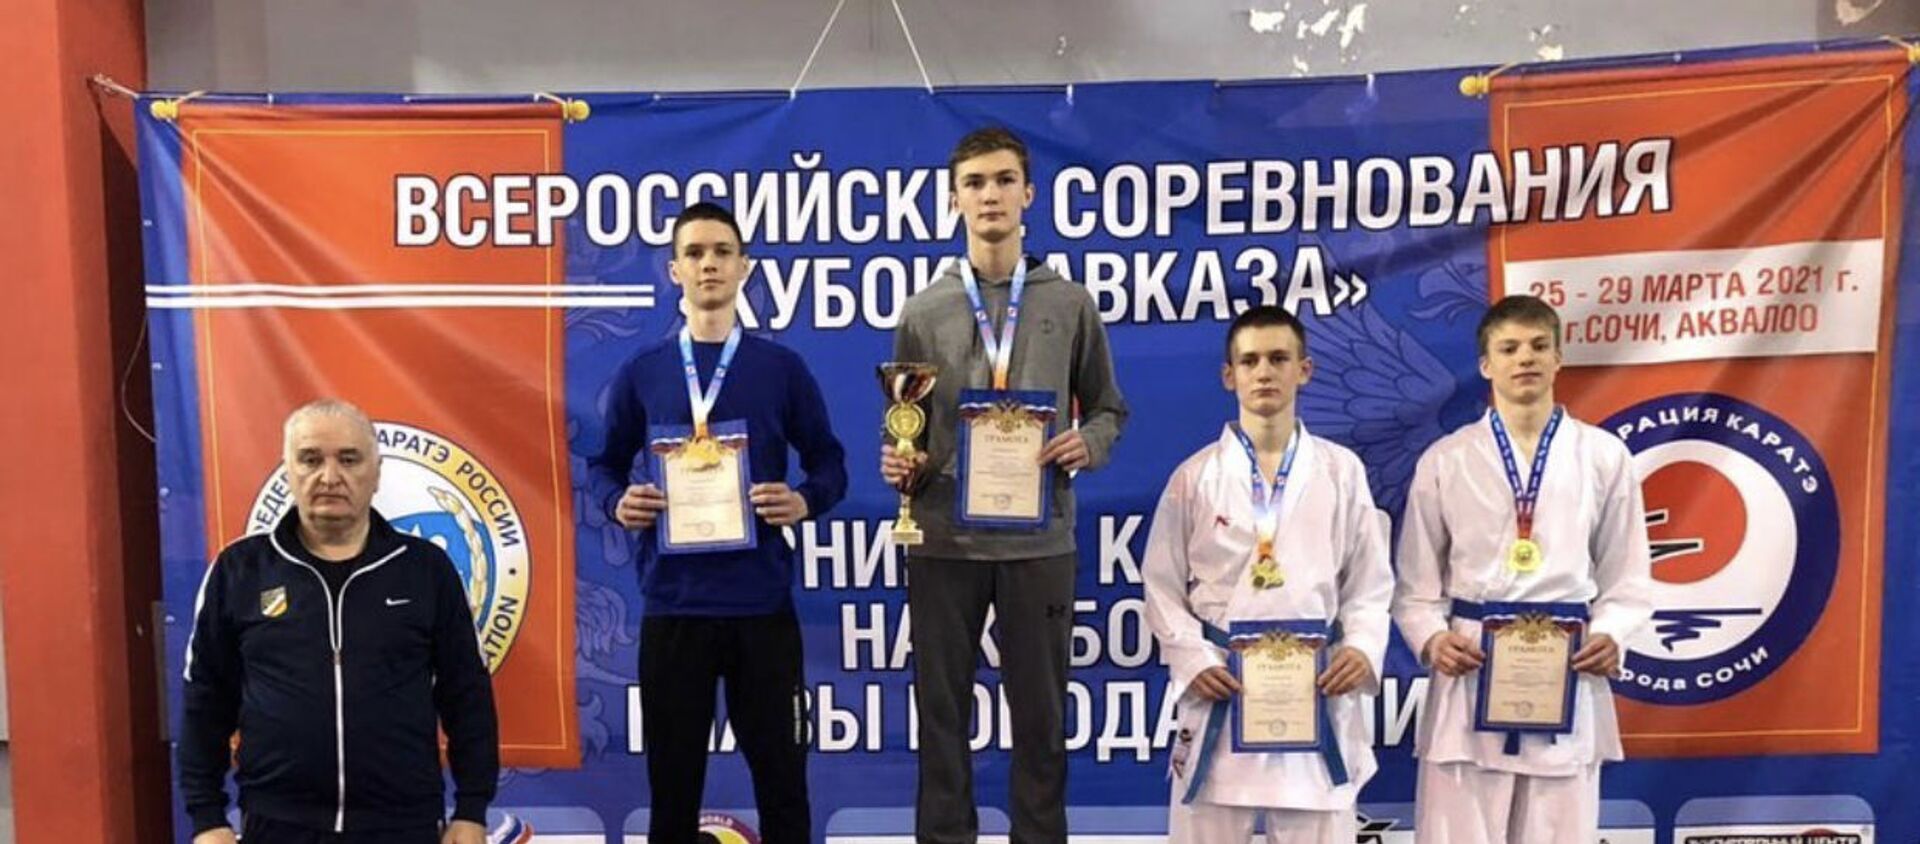 Двенадцать медалей завоевали осетинские каратисты на соревнованиях в Сочи  - Sputnik Южная Осетия, 1920, 31.03.2021